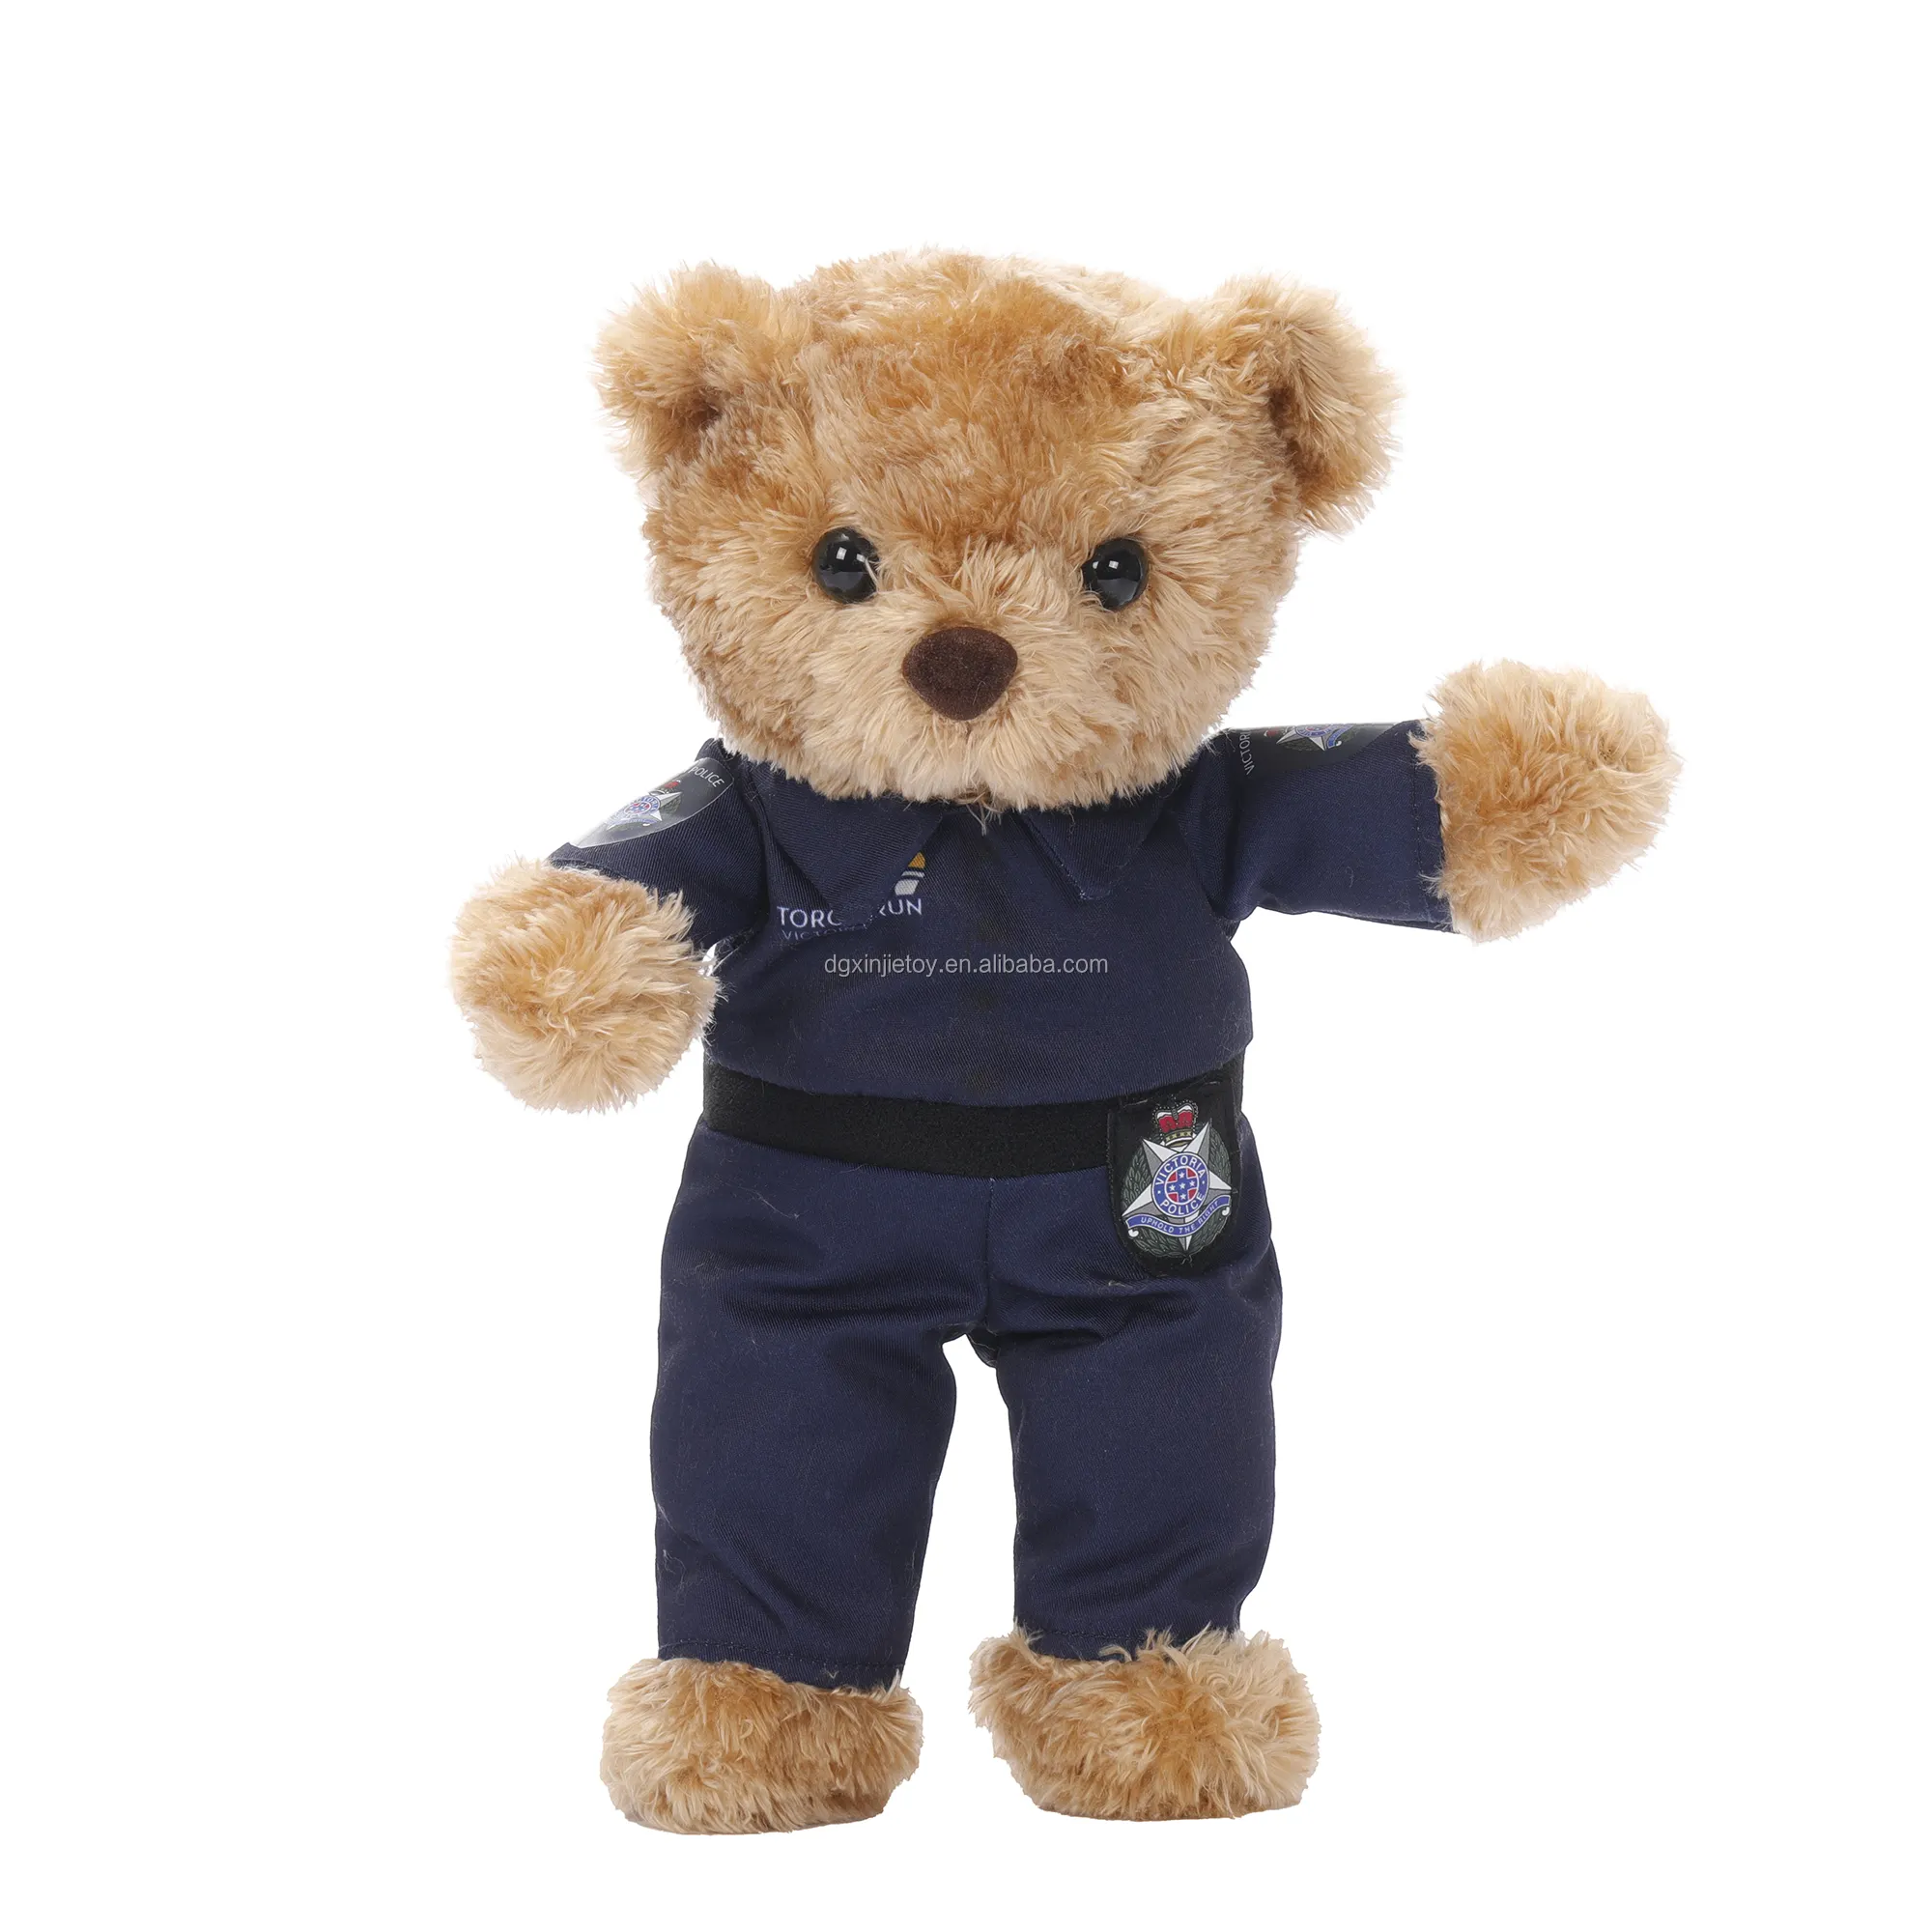 Uniforme personnalisé ours en peluche jouets mignon peluche position debout portant des vêtements en peluche ours en peluche jouet